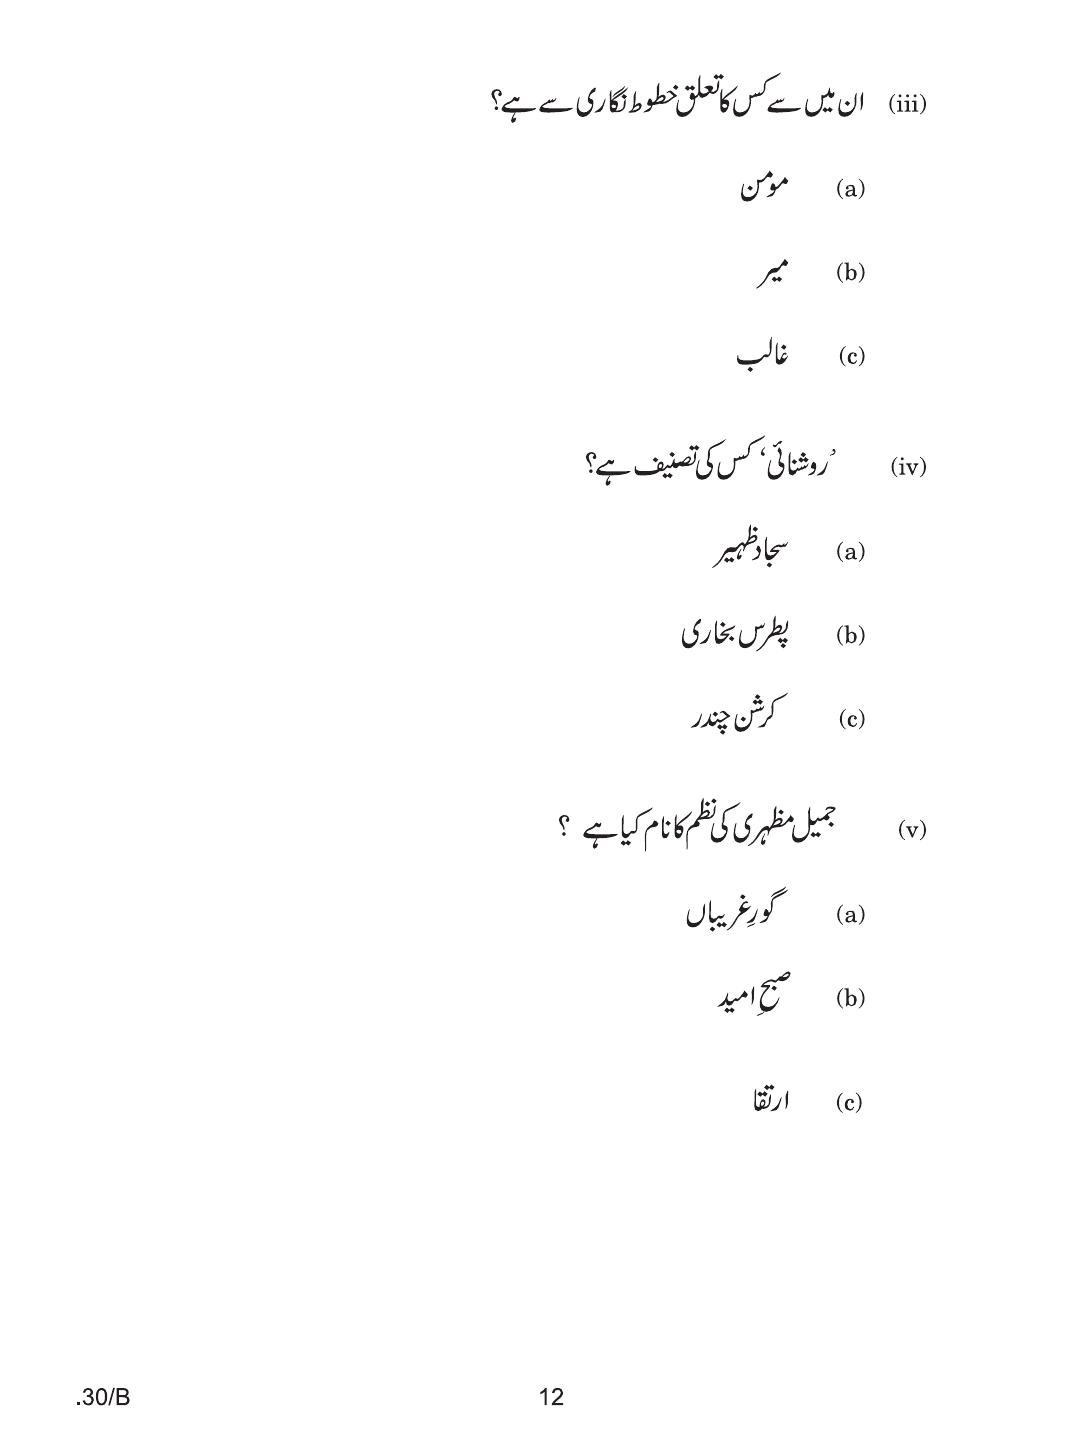 CBSE Class 12 Urdu Elective 2020 Compartment Question Paper - Page 12